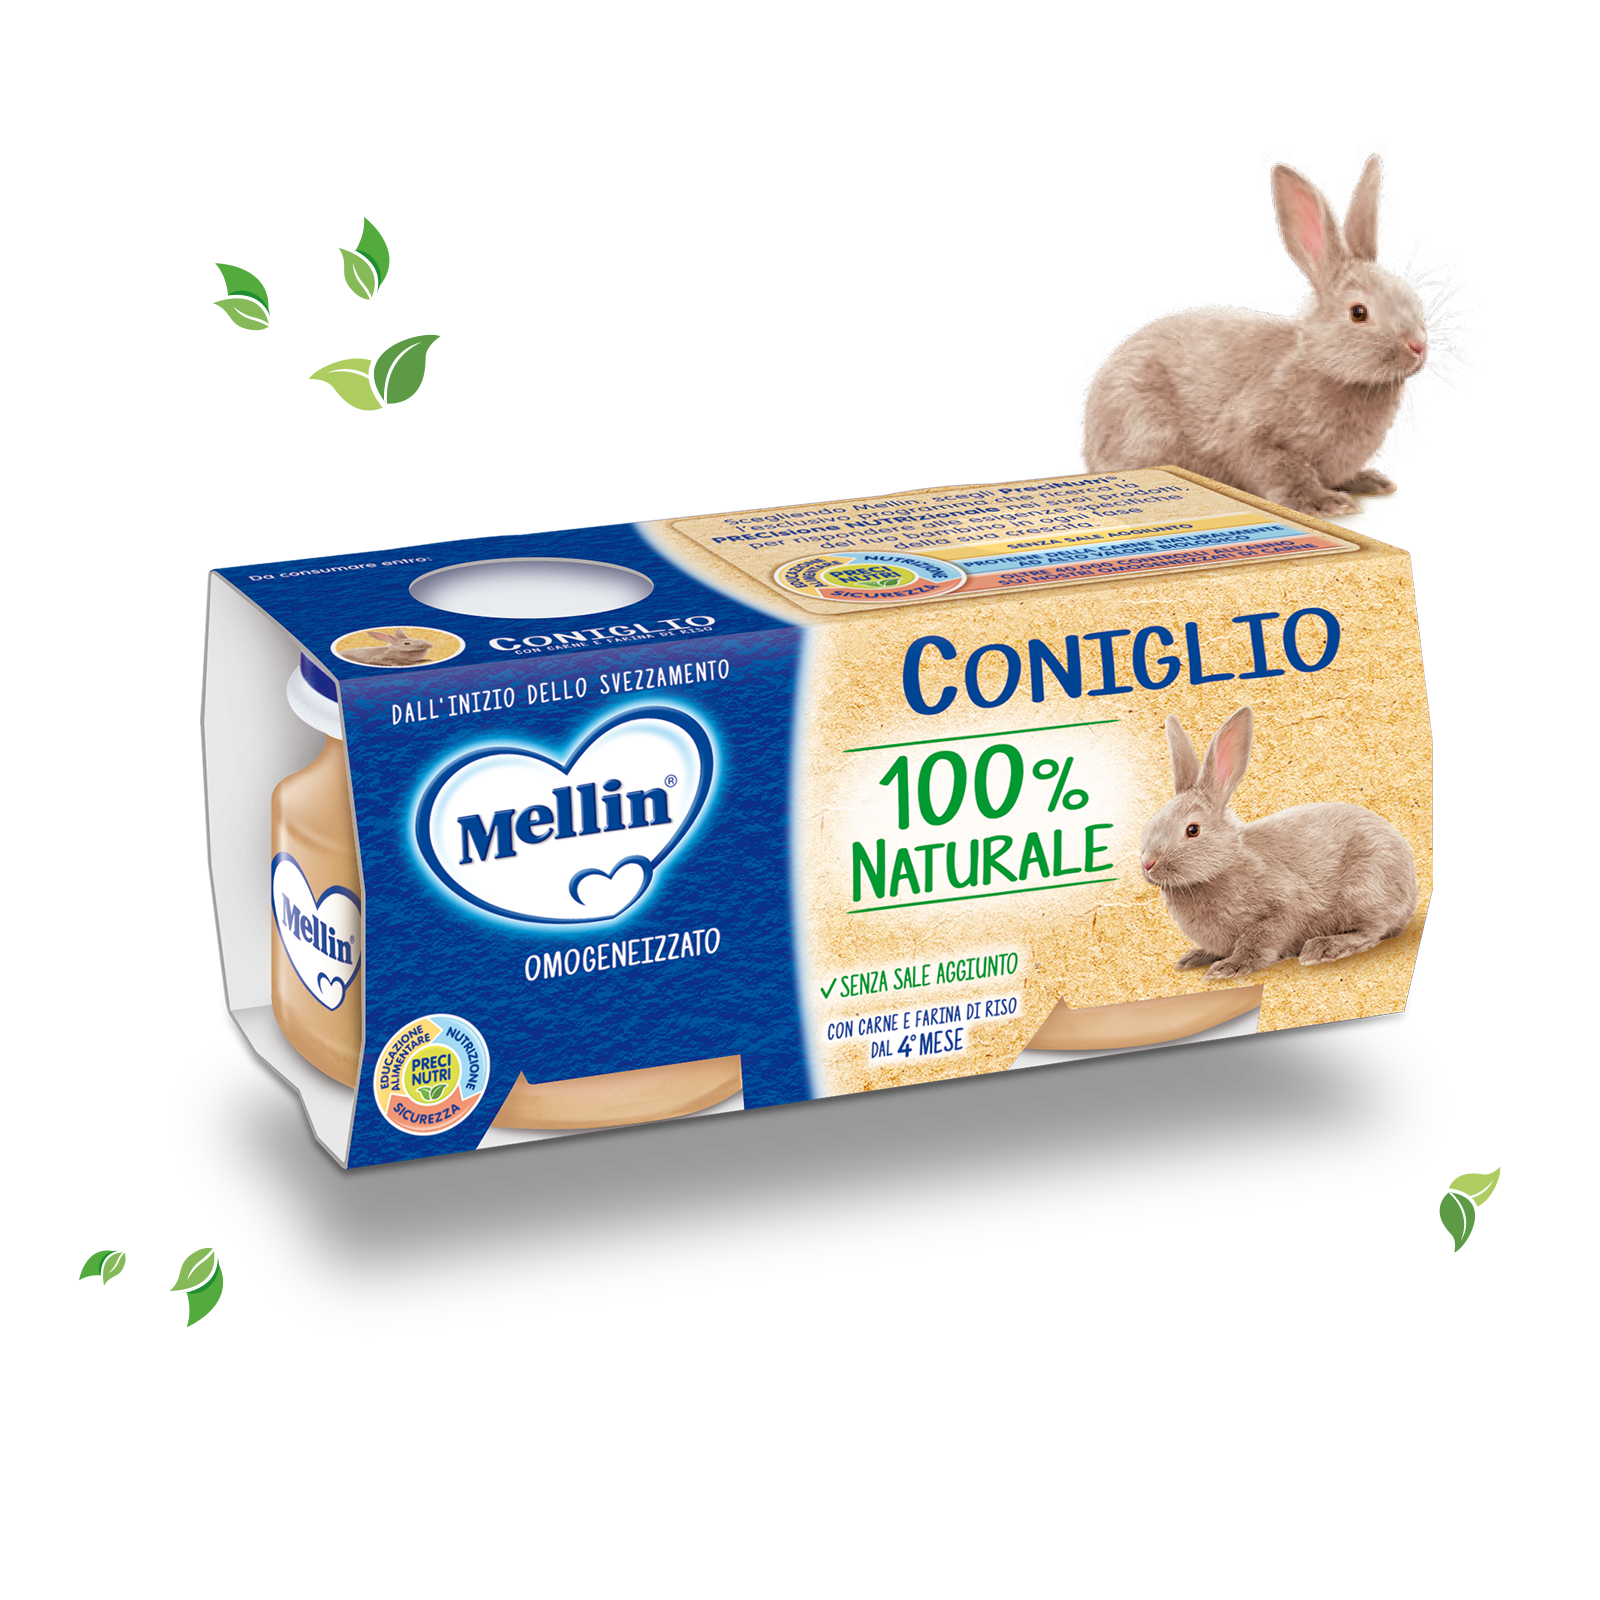 Coniglio Confezione da 160 g ℮ (2 vasetti x 80 g) | Mellin